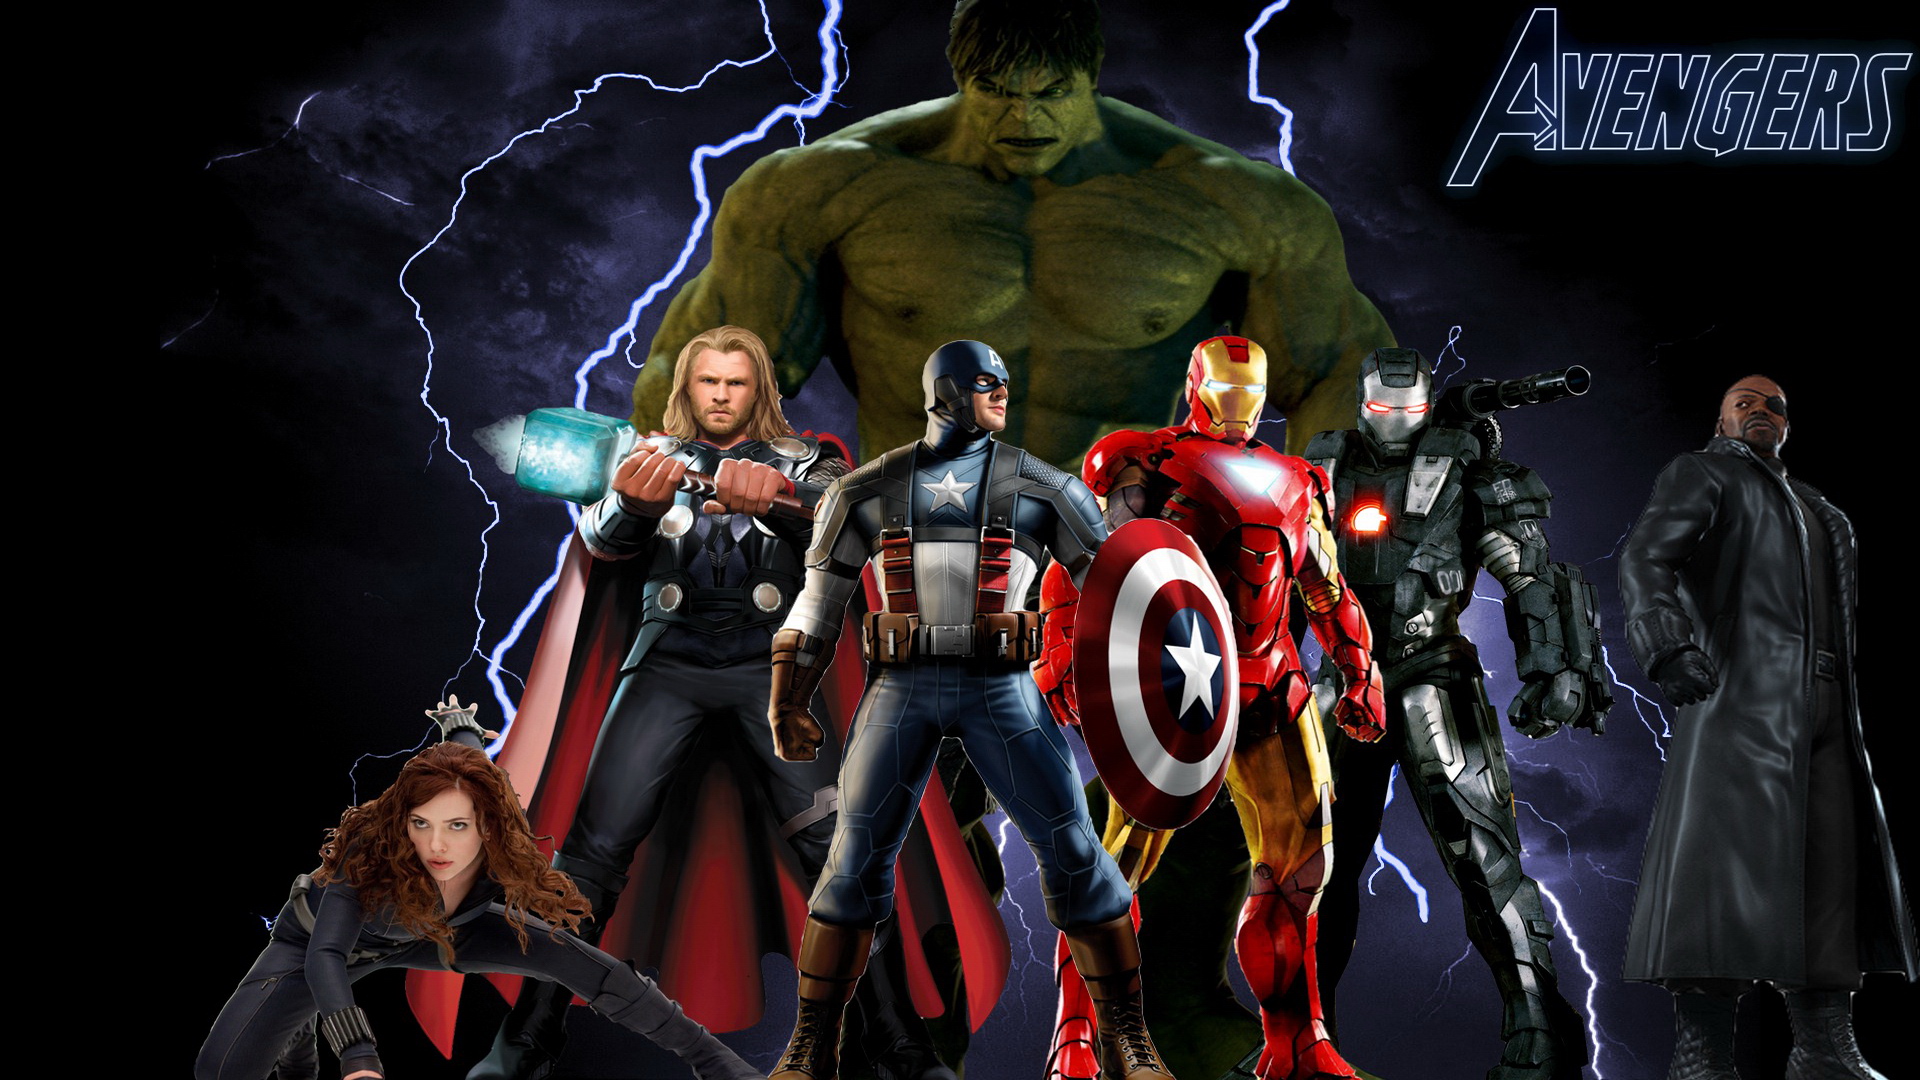 Avengers HD Wallpapers 1080p - WallpaperSafari